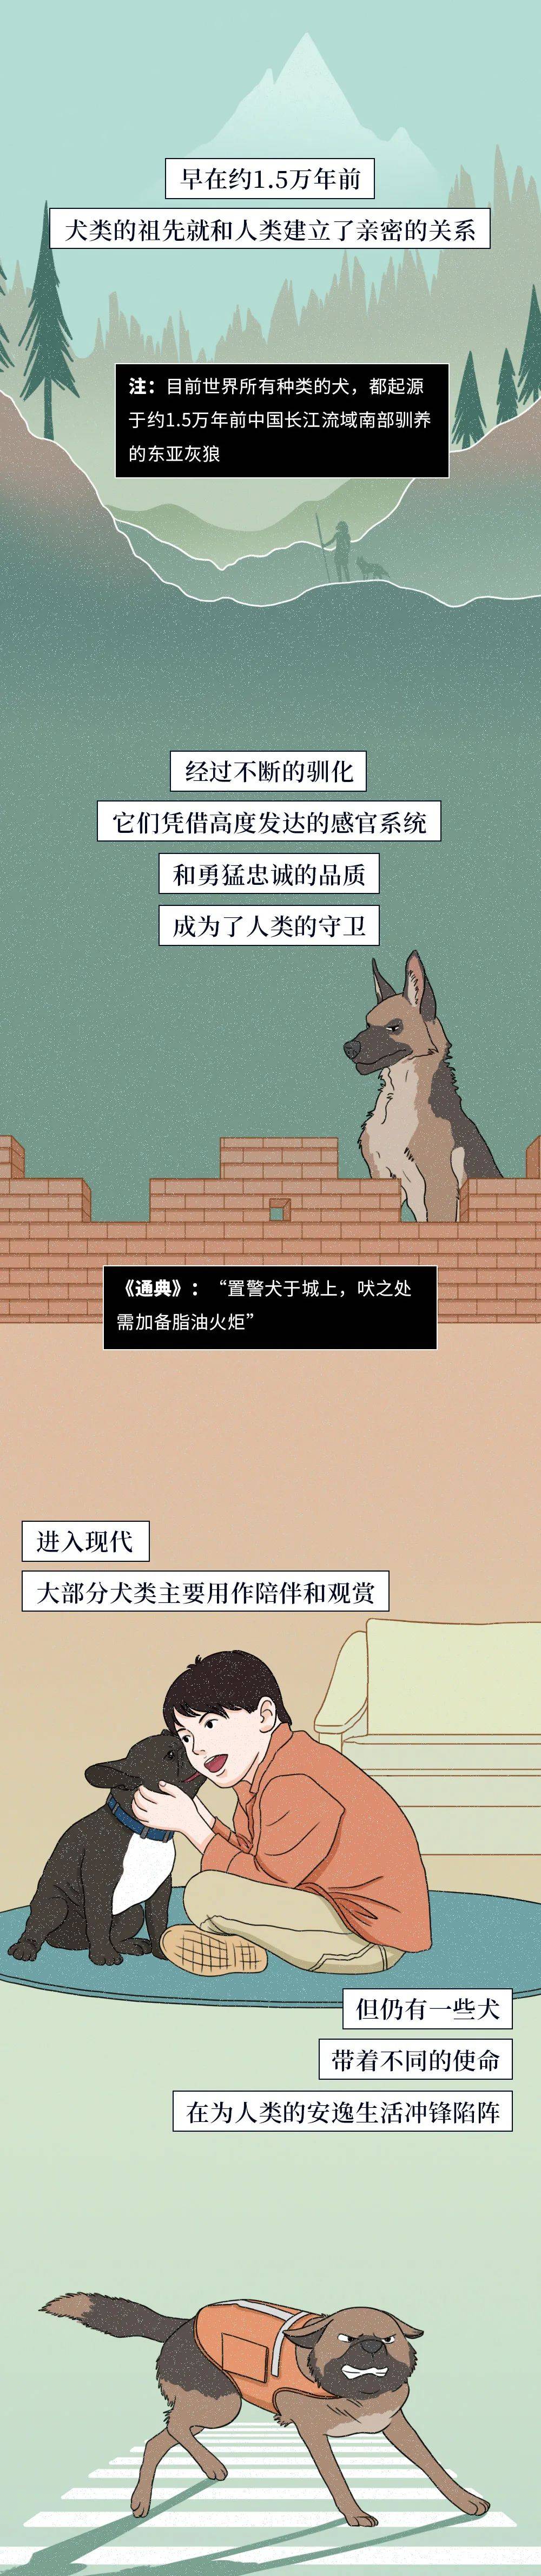 中国警犬图鉴